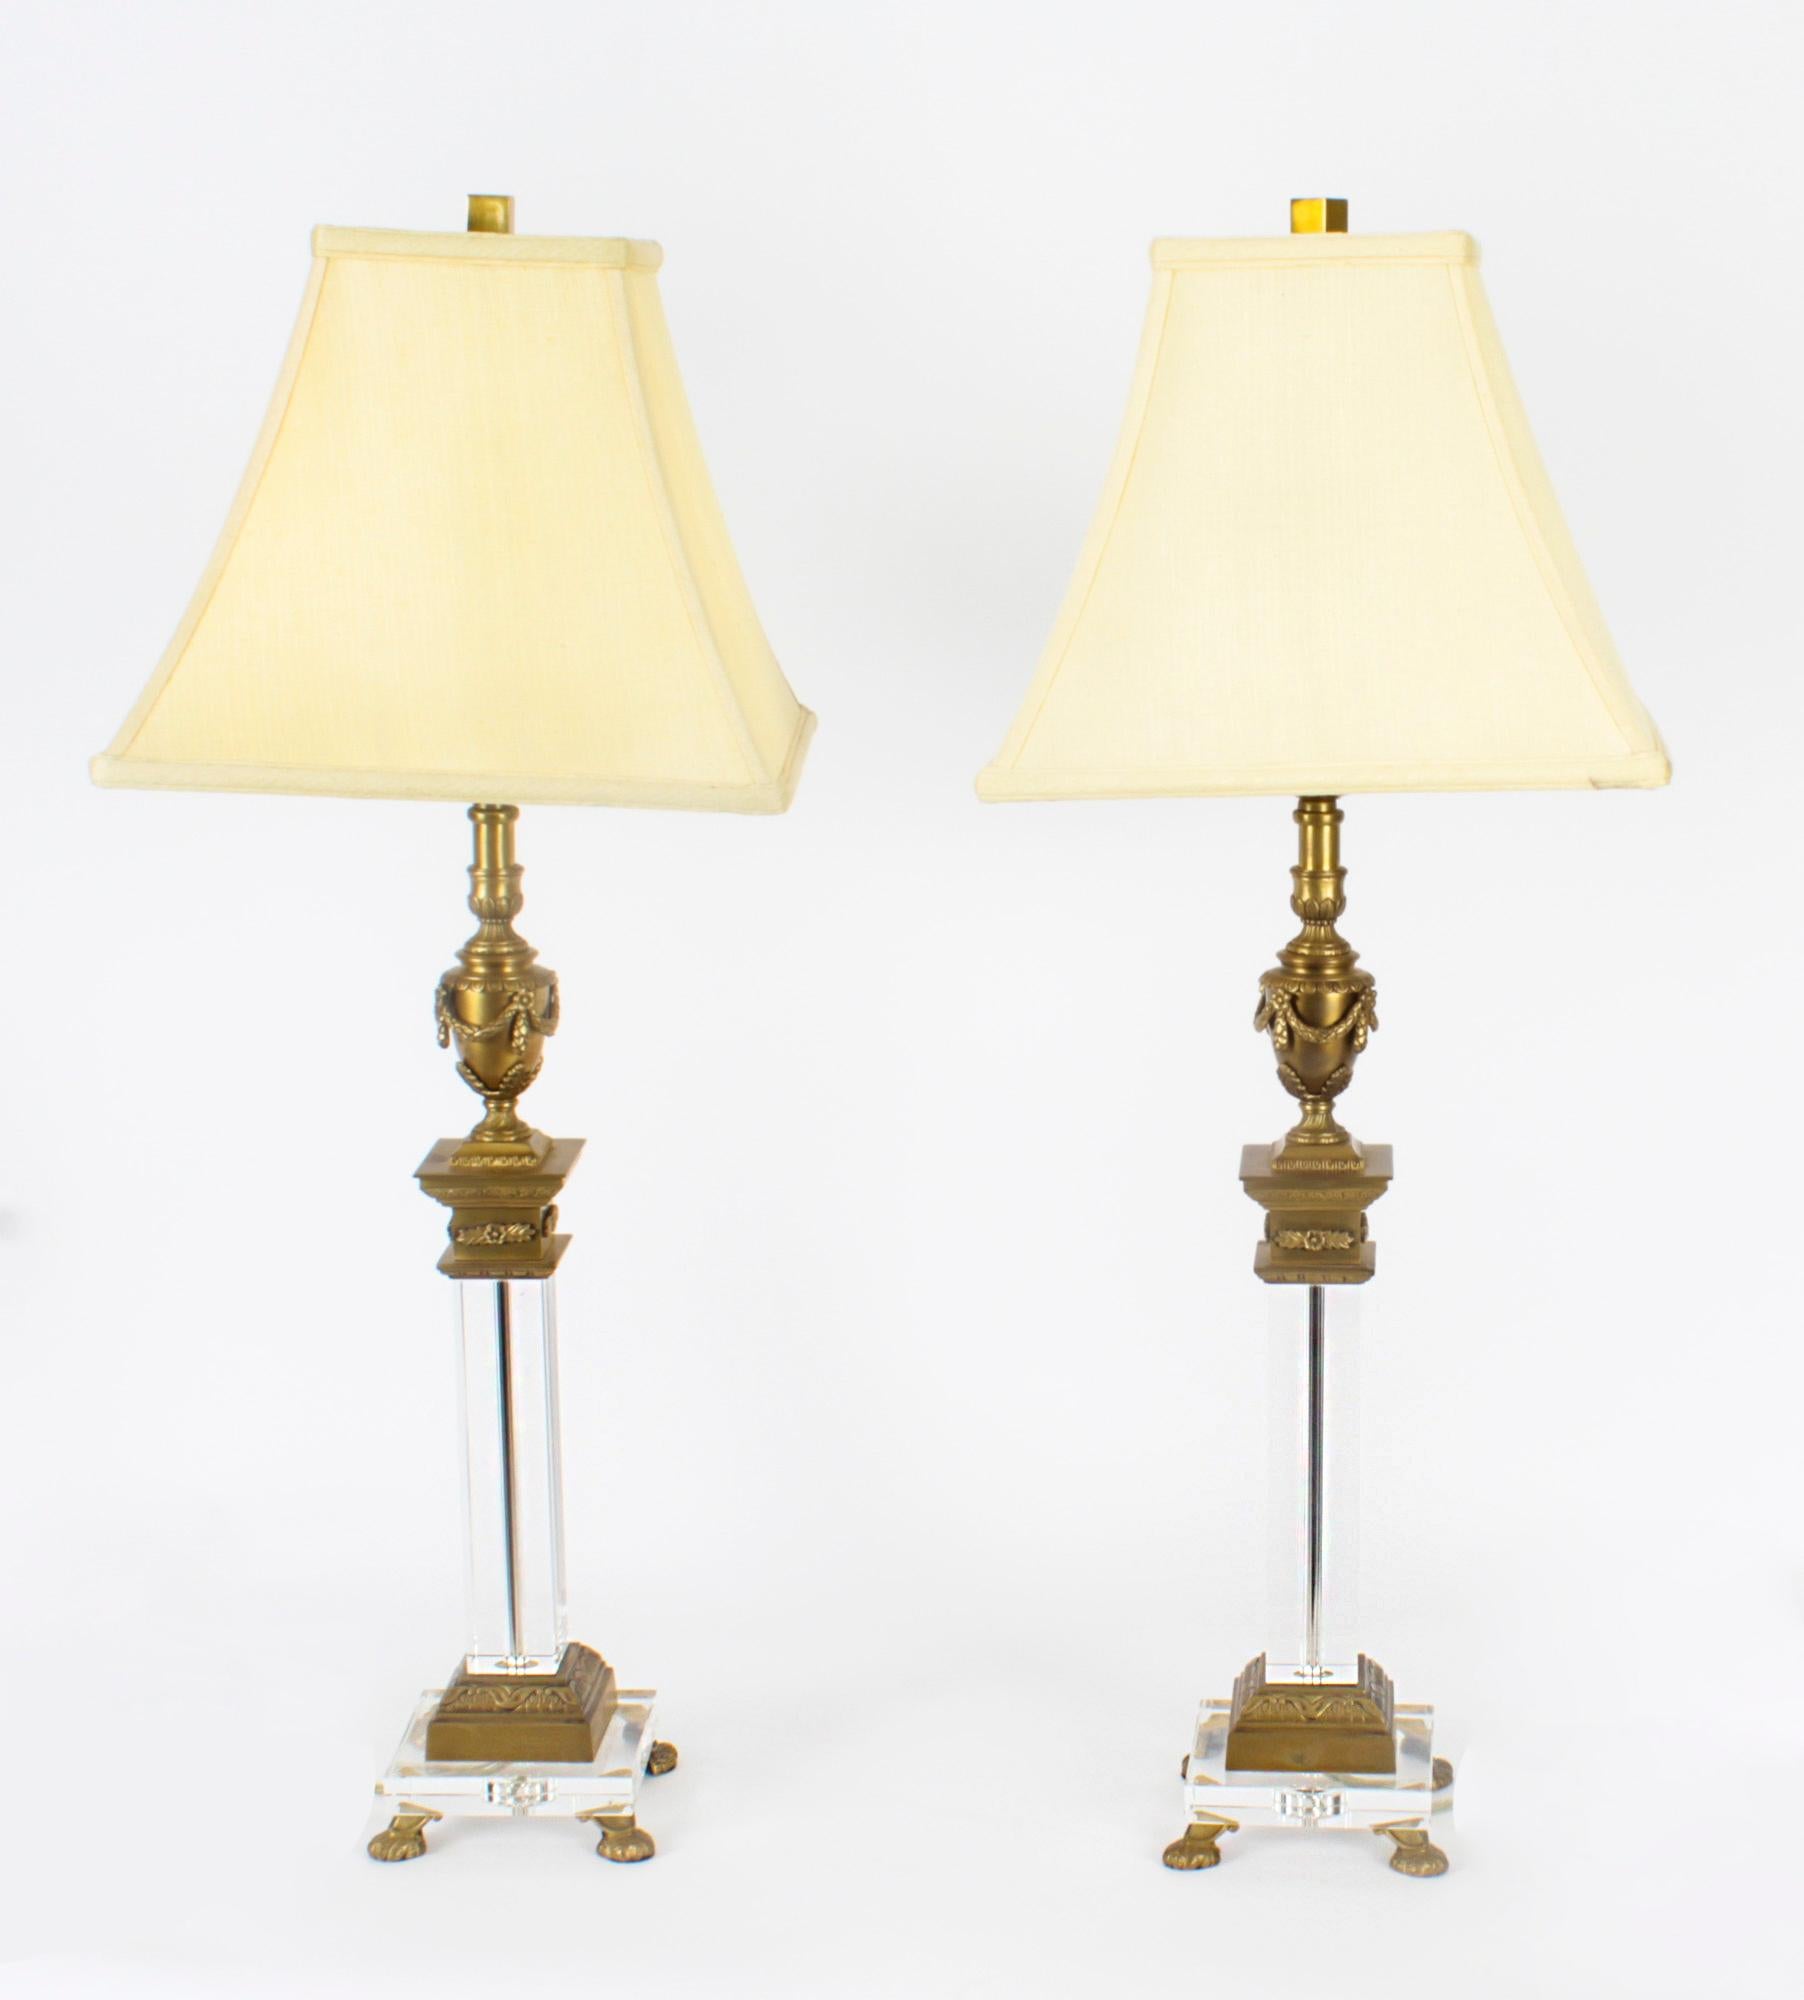 Il s'agit d'une impressionnante paire de lampes de table à colonne et urne corinthienne classique en bronze doré et verre, datant de la moitié du 20e siècle.

Chaque lampe présente un chapiteau classique en forme d'urne avec des guirlandes,